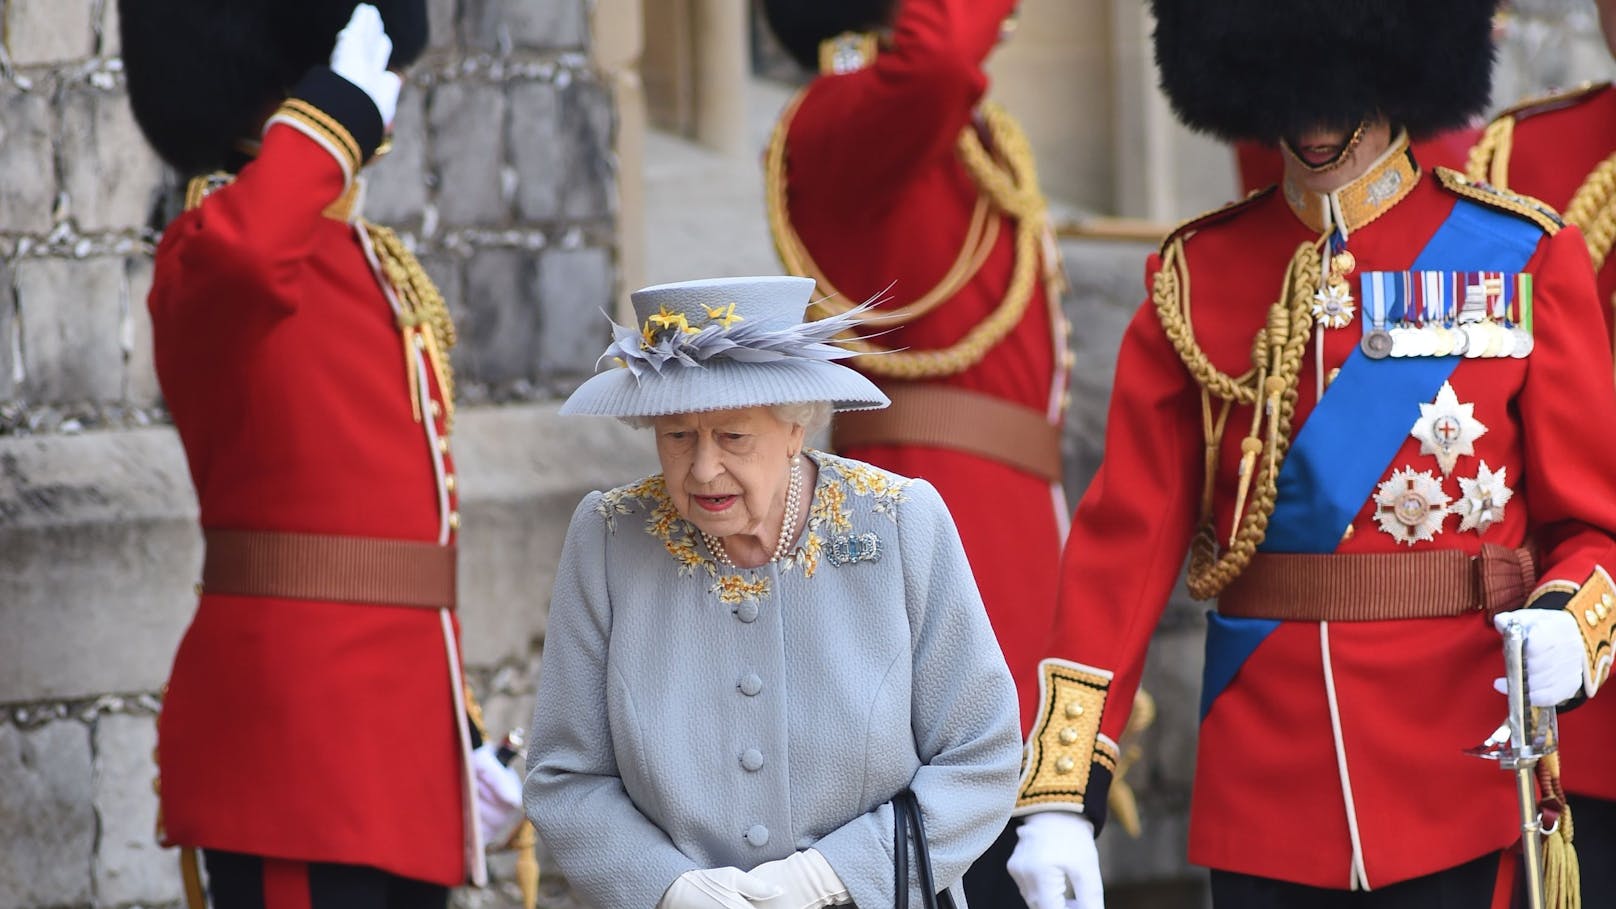 Erneute Sicherheitsbedenken für die Monarchin: Ein Eindringling verschaffte sich Zutritt in die Kaserne der Coldstream Guards, die hochrangige königliche Beamte sind. 